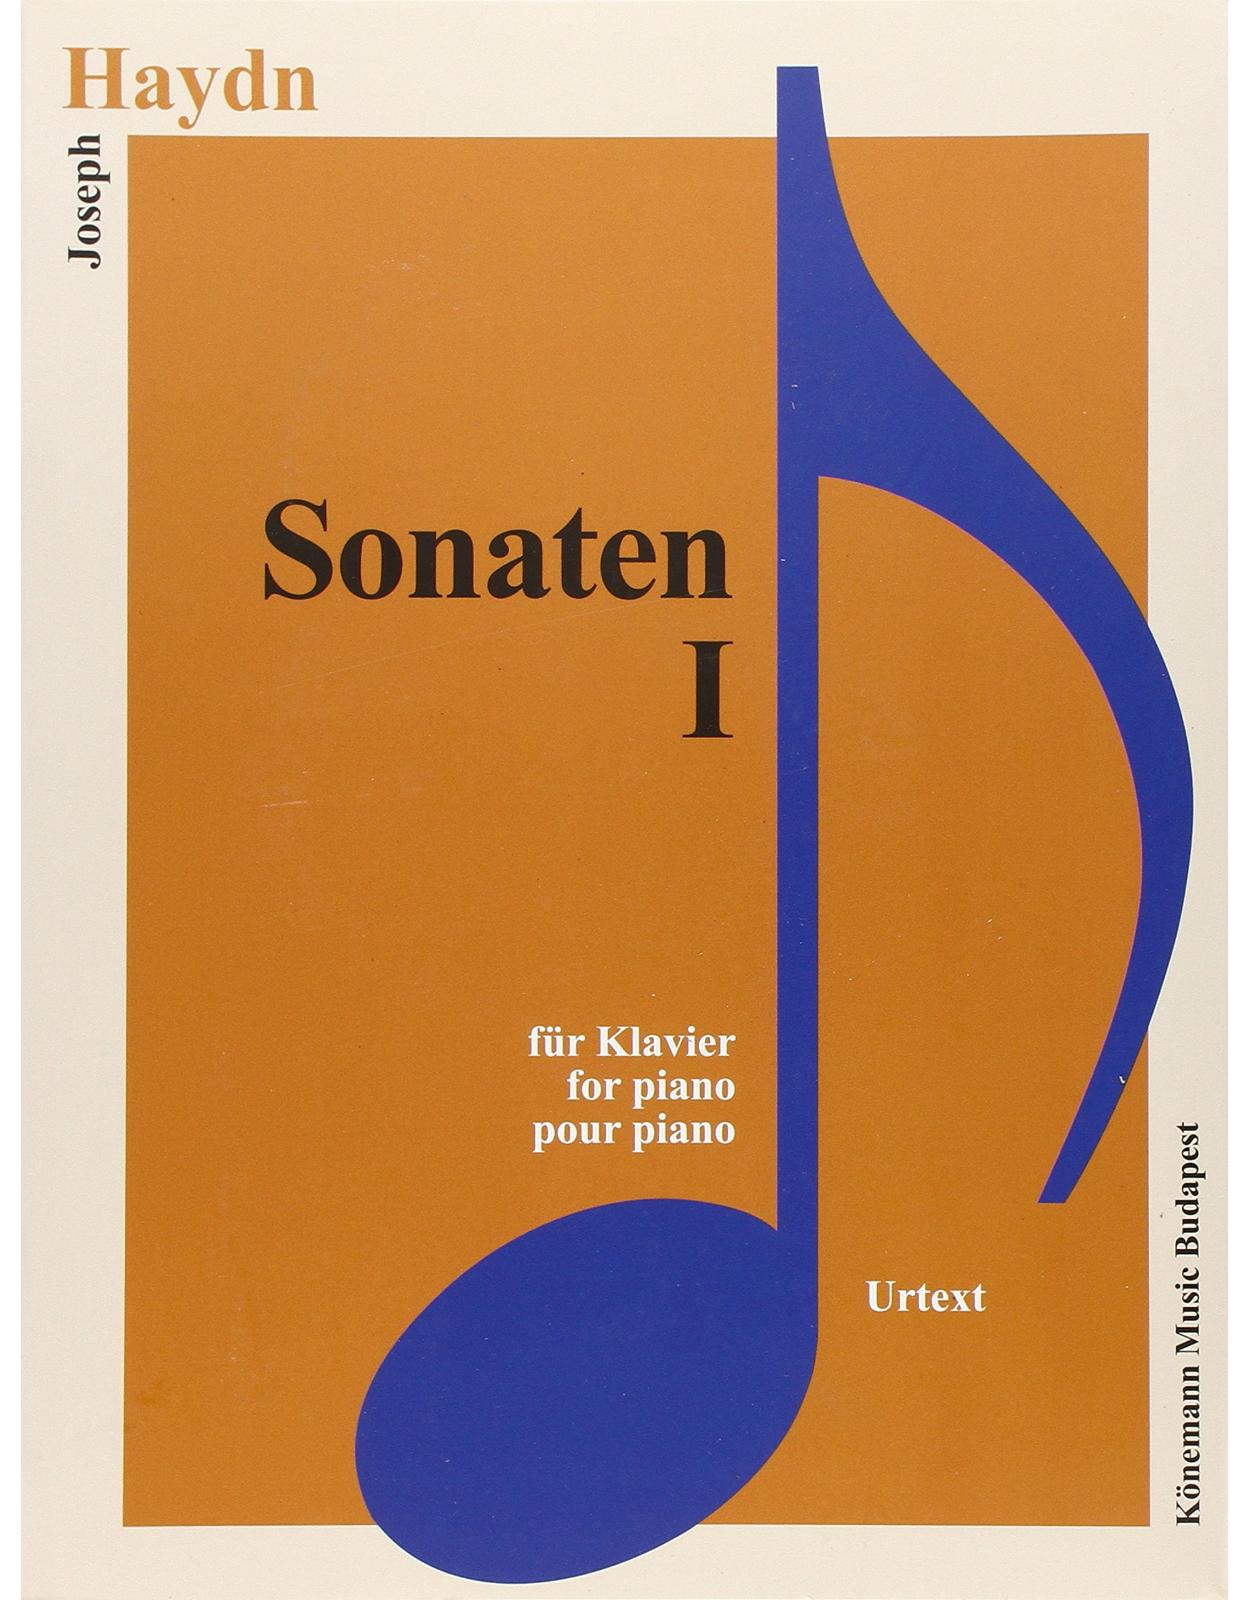 Haydn, Sonaten I